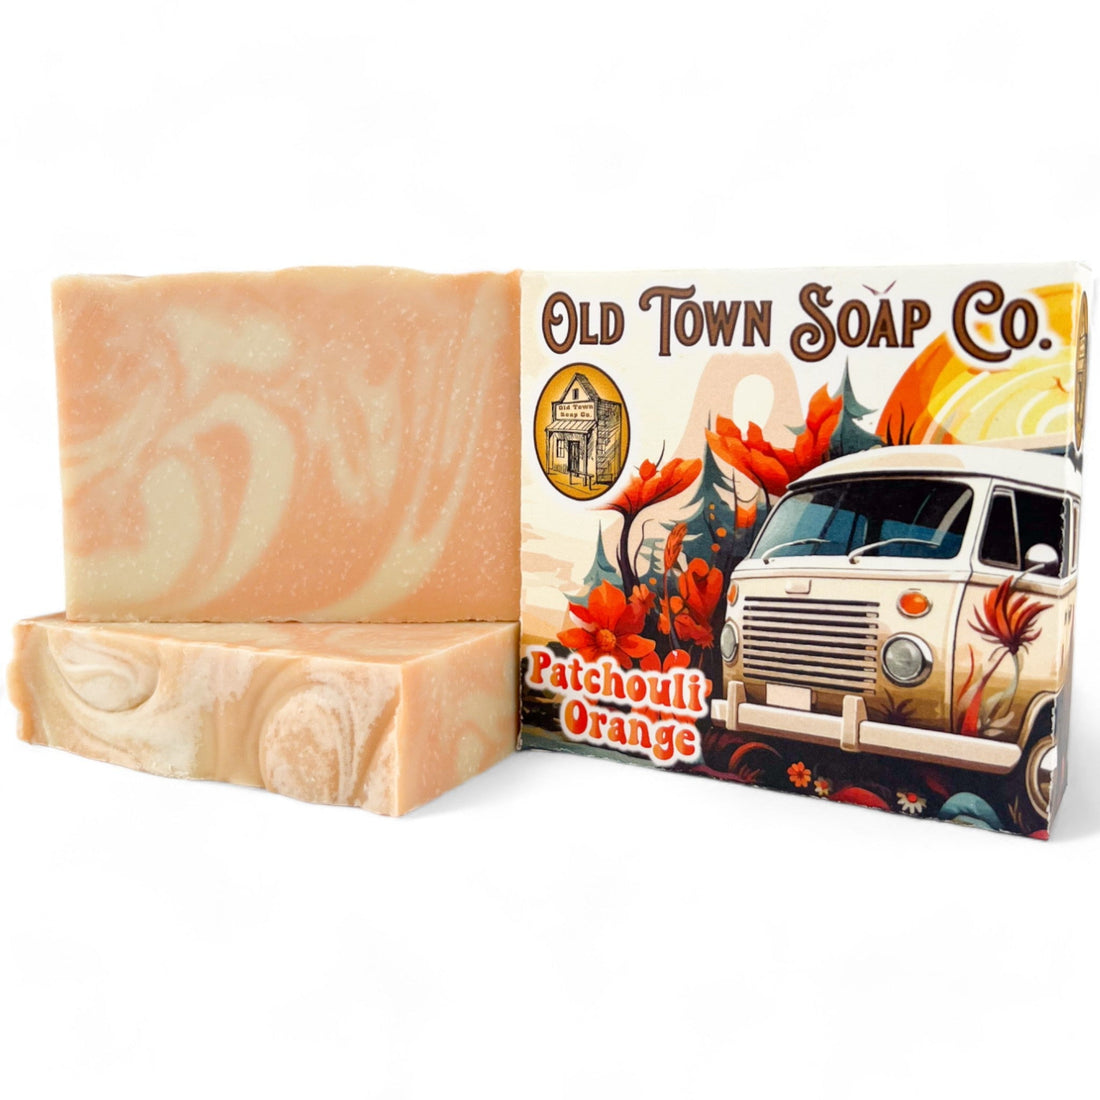 Patchouli Orange -Bar Soap - Old Town Soap Co.